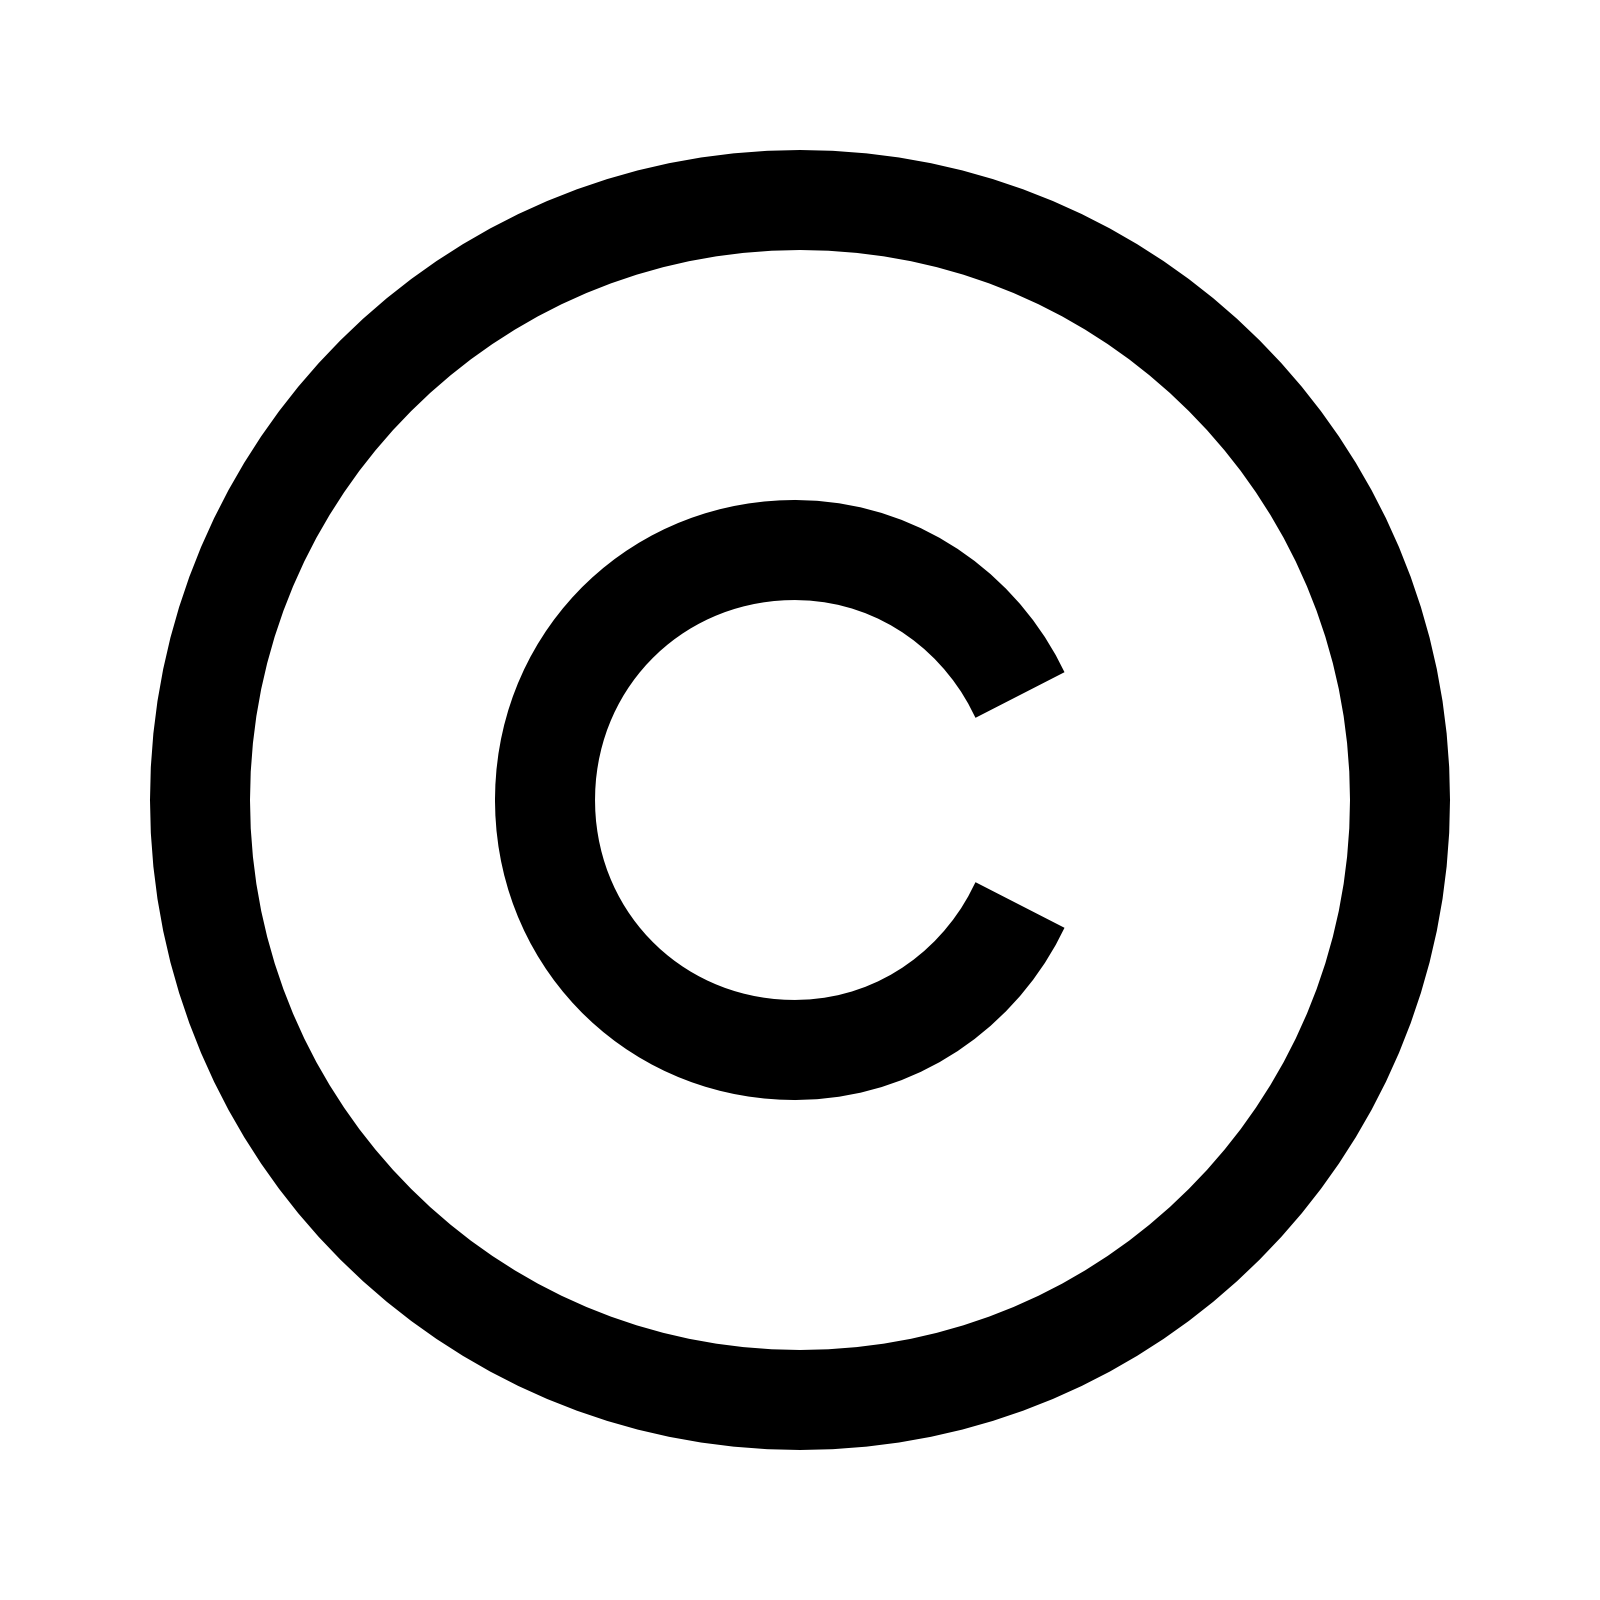 Circle C Logo - C copyright Logos